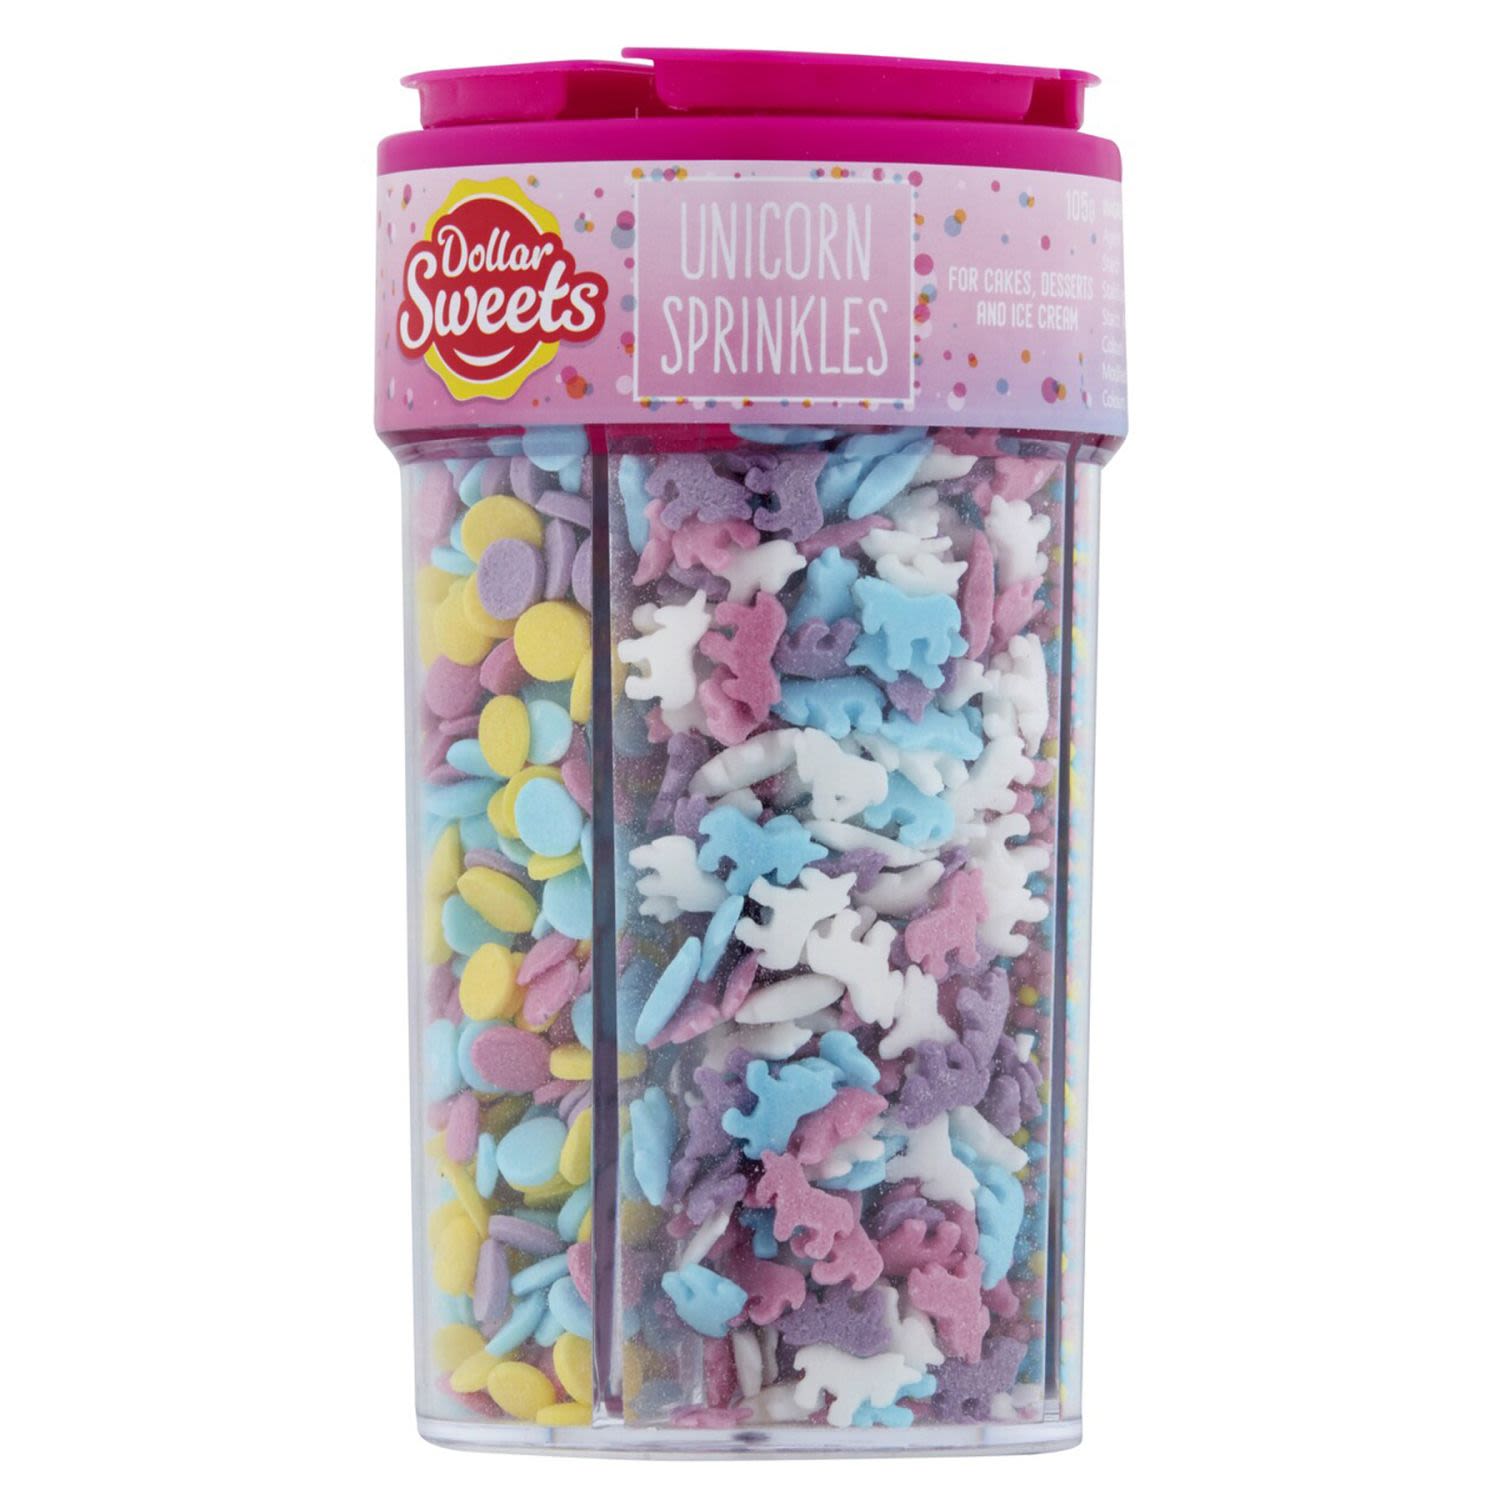 Dollar Sweets Unicorn Sprinkle Jar, 105 Gram